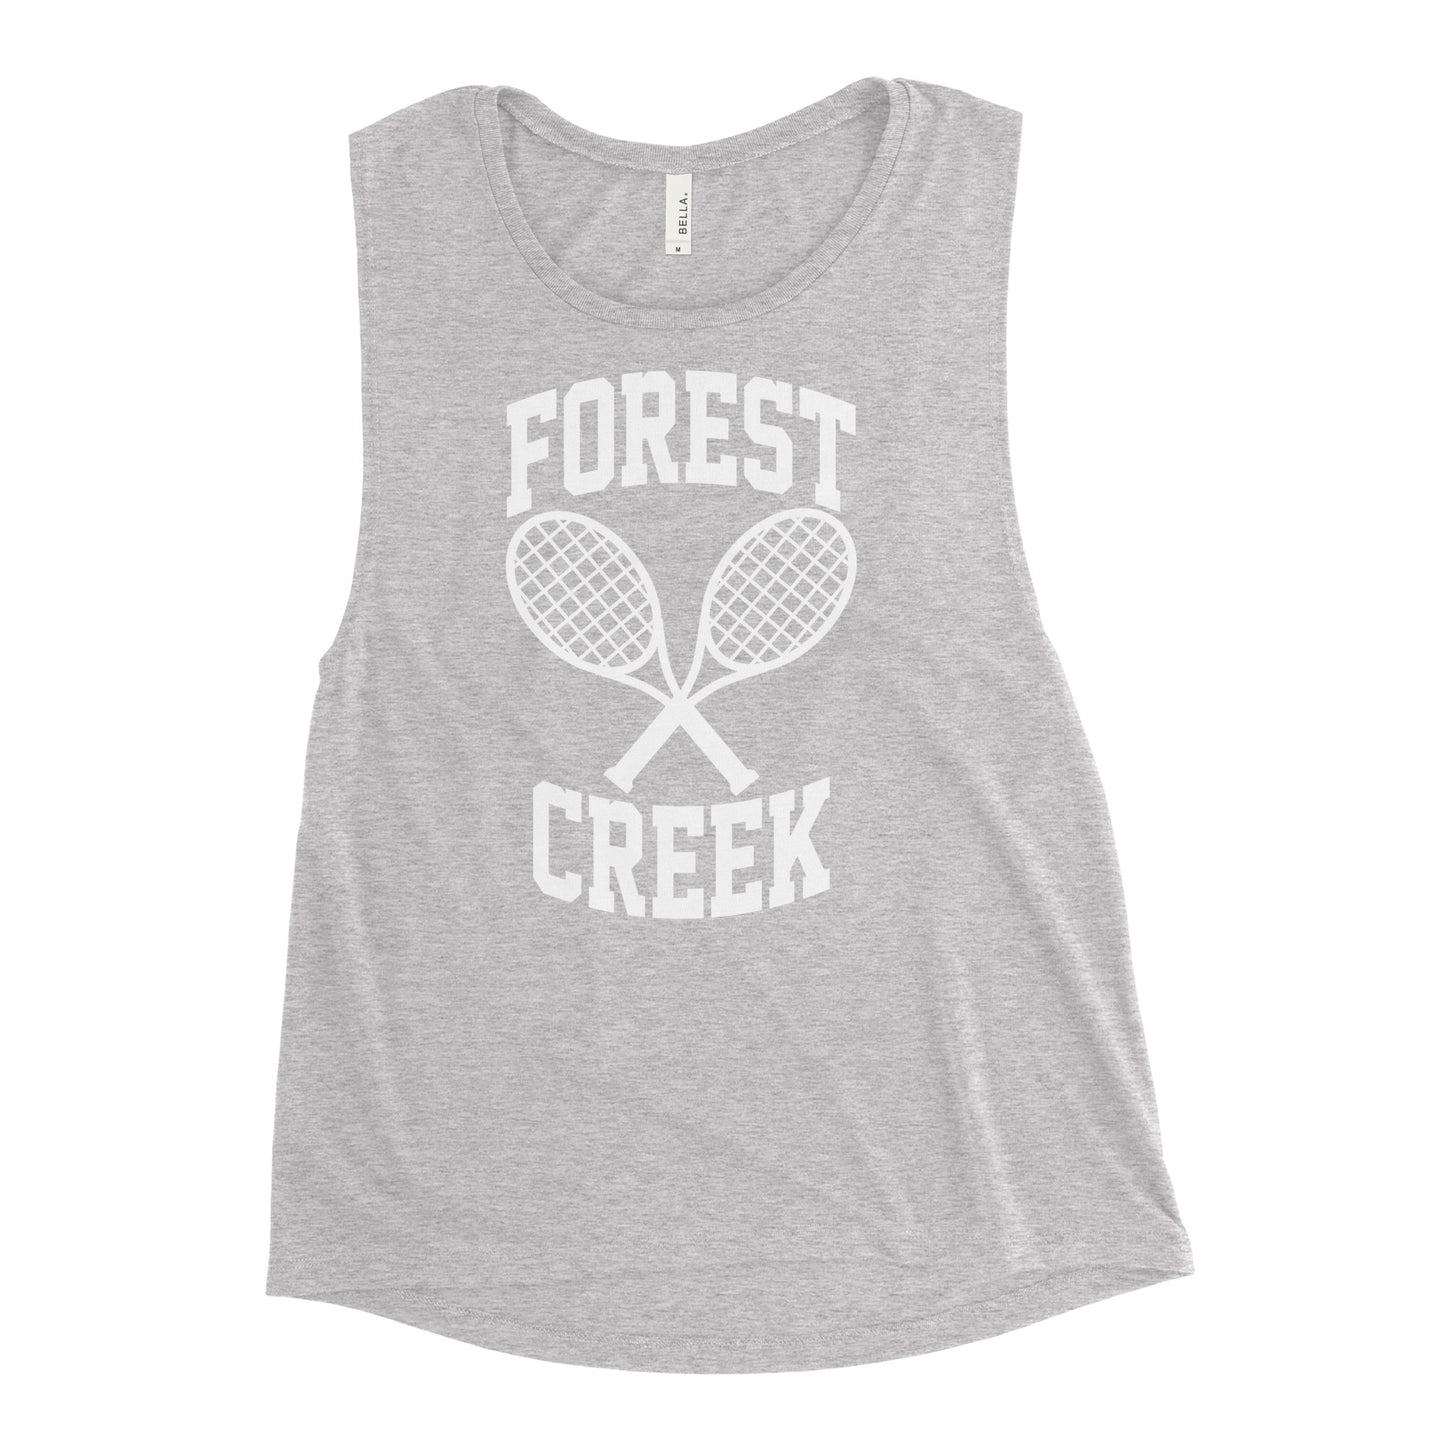 Forest Creek tennis team Ladies’ muscle tank